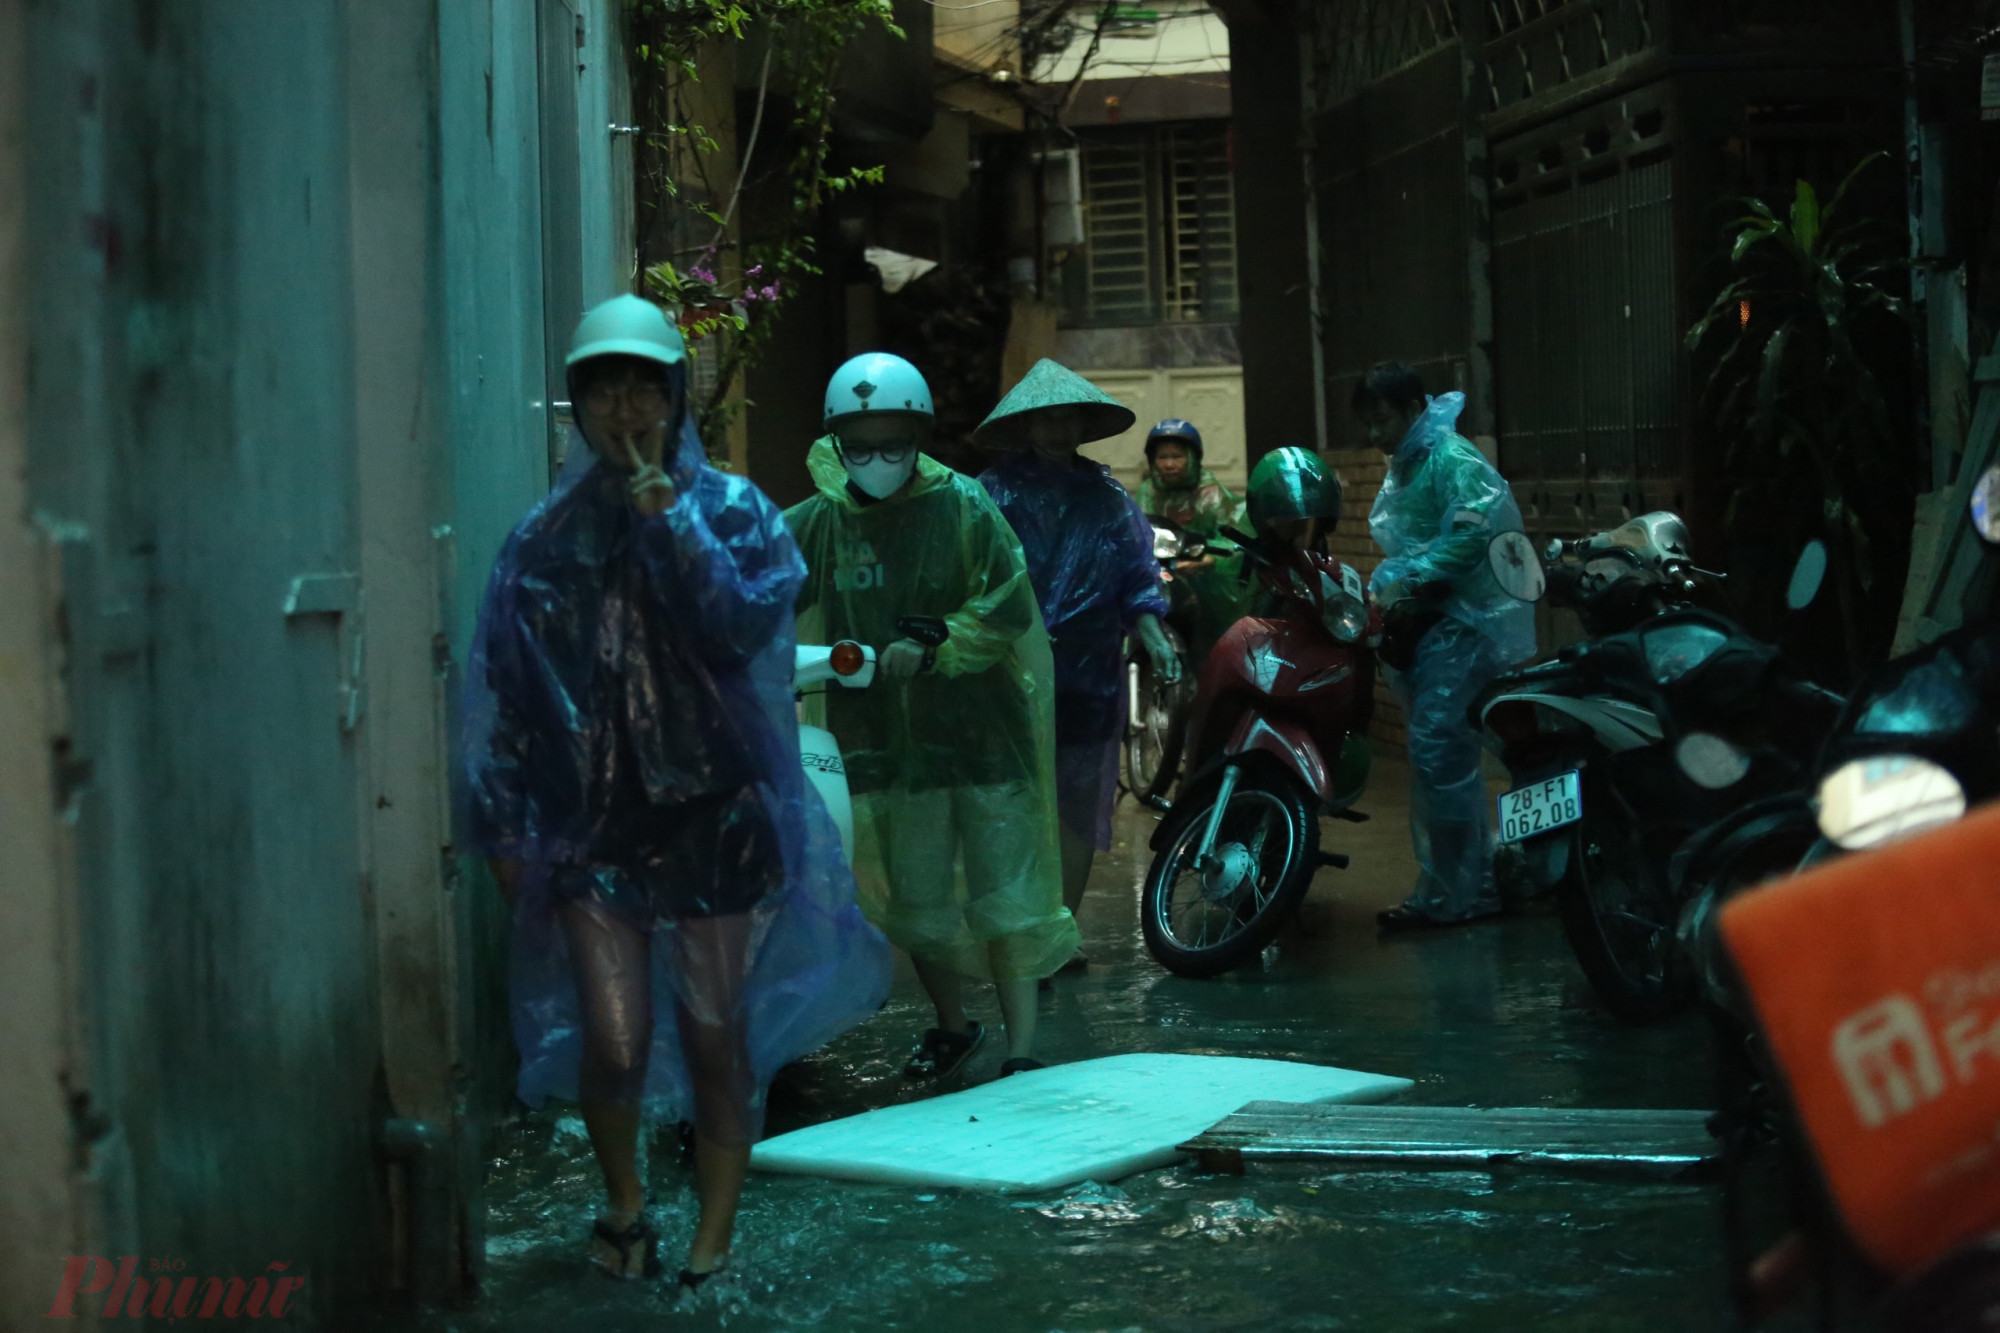 Trung tâm Dự báo Khí tượng Thủy văn quốc gia phát đi thông báo, khu vực nội thành Hà Nội có mưa vừa, mưa to đến rất to. Vào chiều nay (31/7) khu vực nội thành Hà Nội và các vùng lân cận vẫn tiếp tục có mưa vừa đến mưa to với lượng mưa phổ biến trong khoảng 20 - 40mm, có nơi trên 100mm.